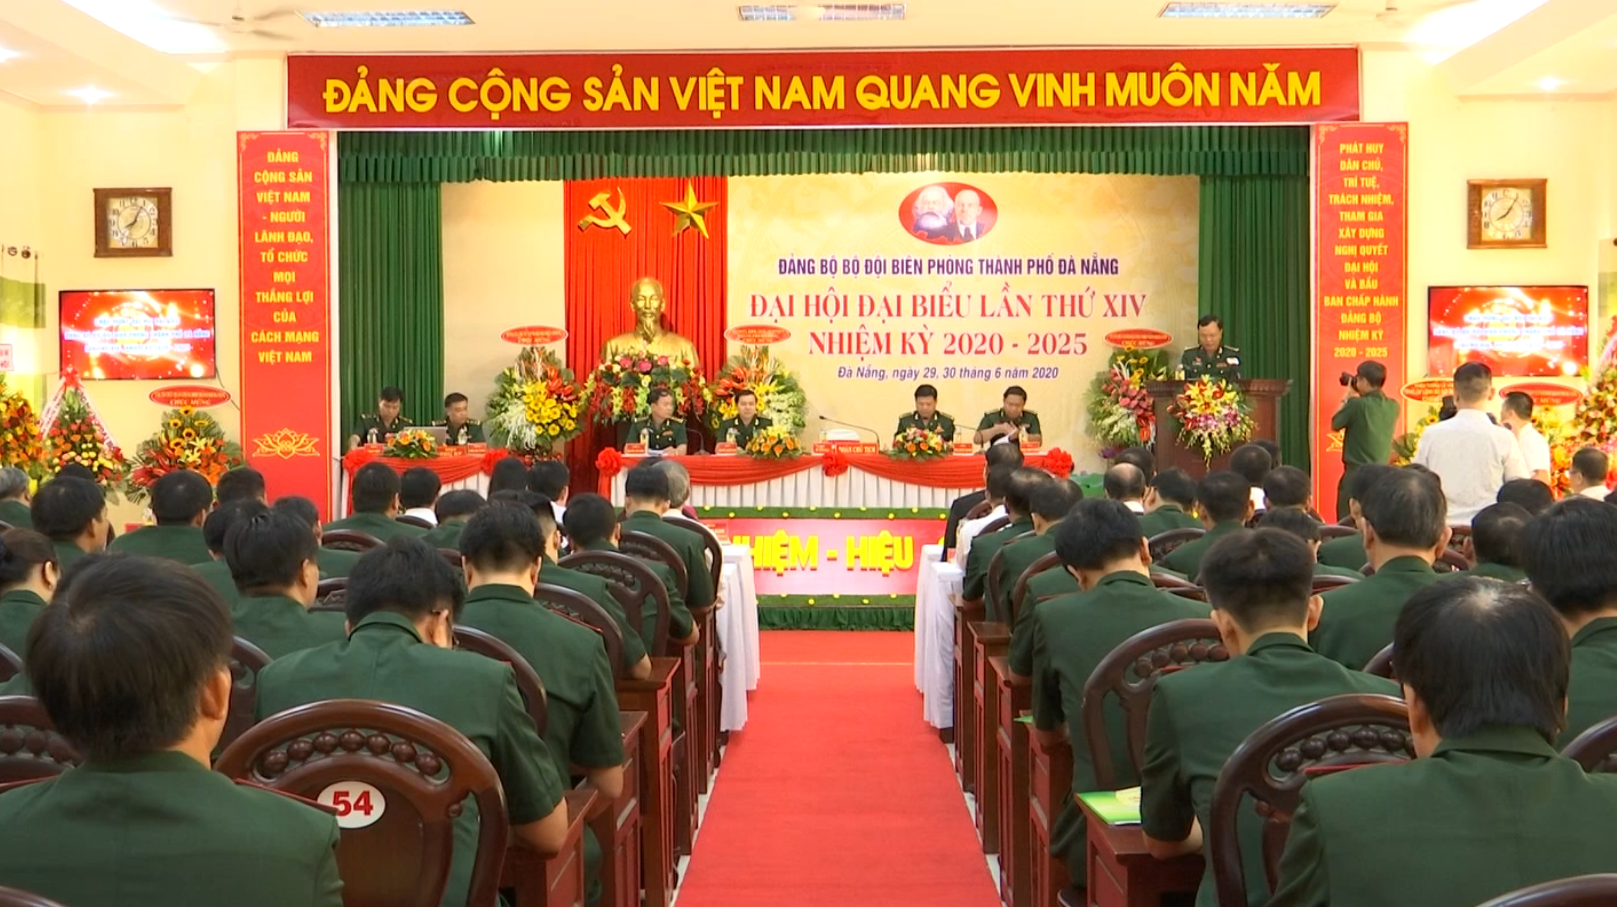 Bộ đội Biên phòng thành phố Đà Nẵng: Xây dựng đơn vị chính quy ...